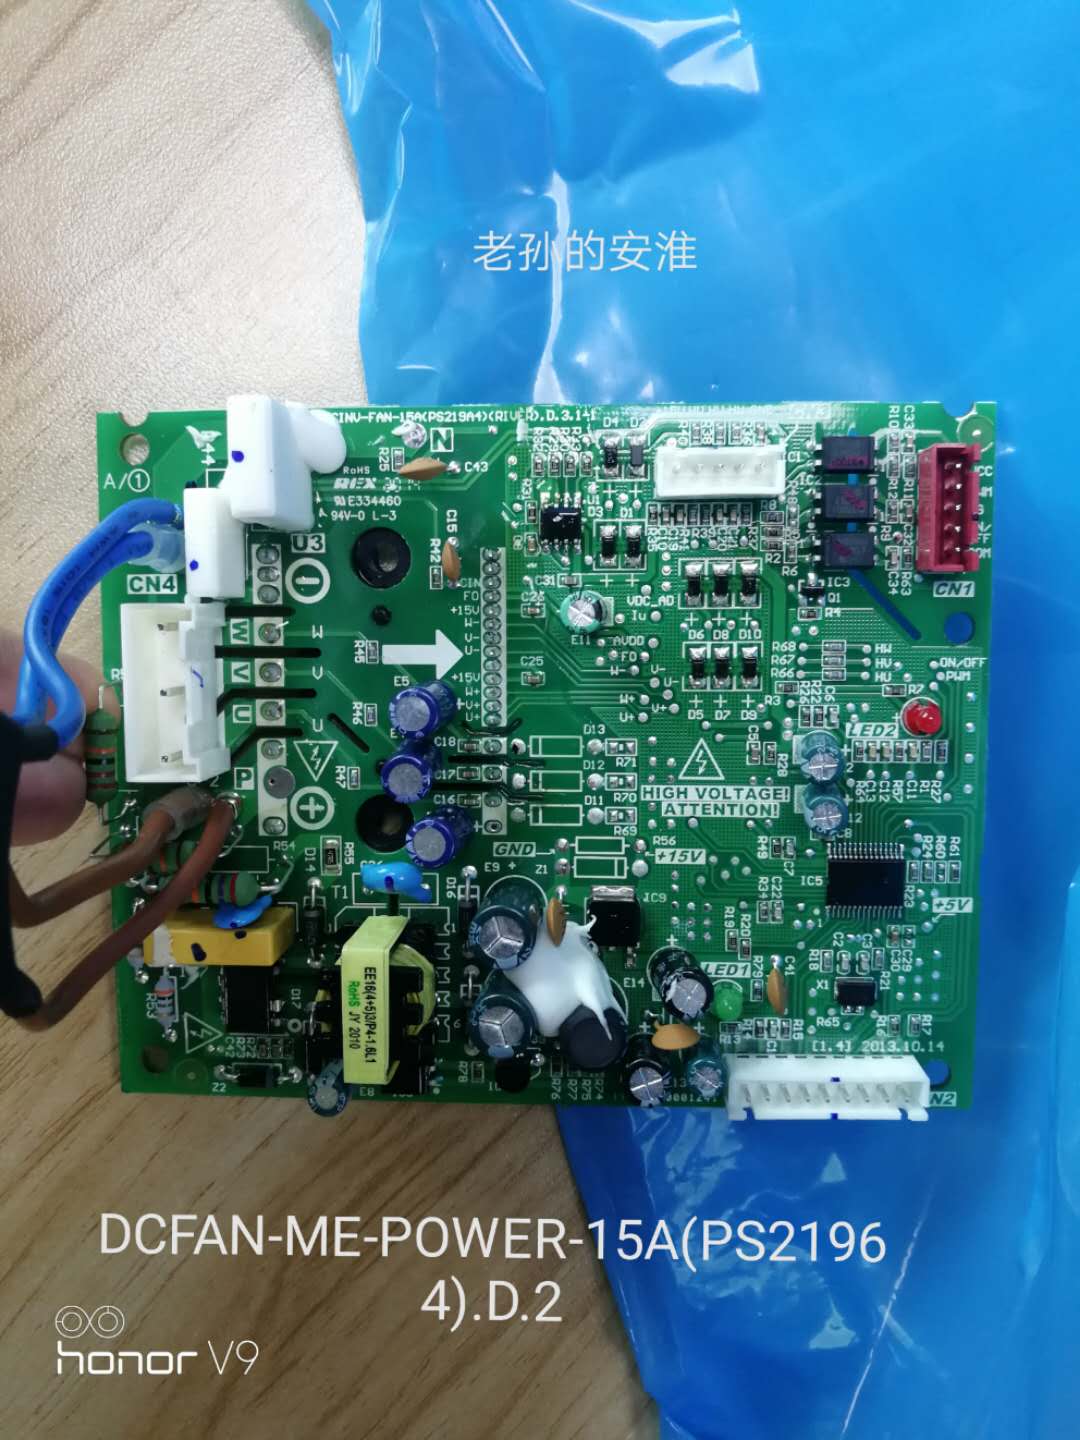 DCINV-FAN-15A(PS21964) Midea Air Conditioner Fan Module Board DCFAN-ME-POWER-15A